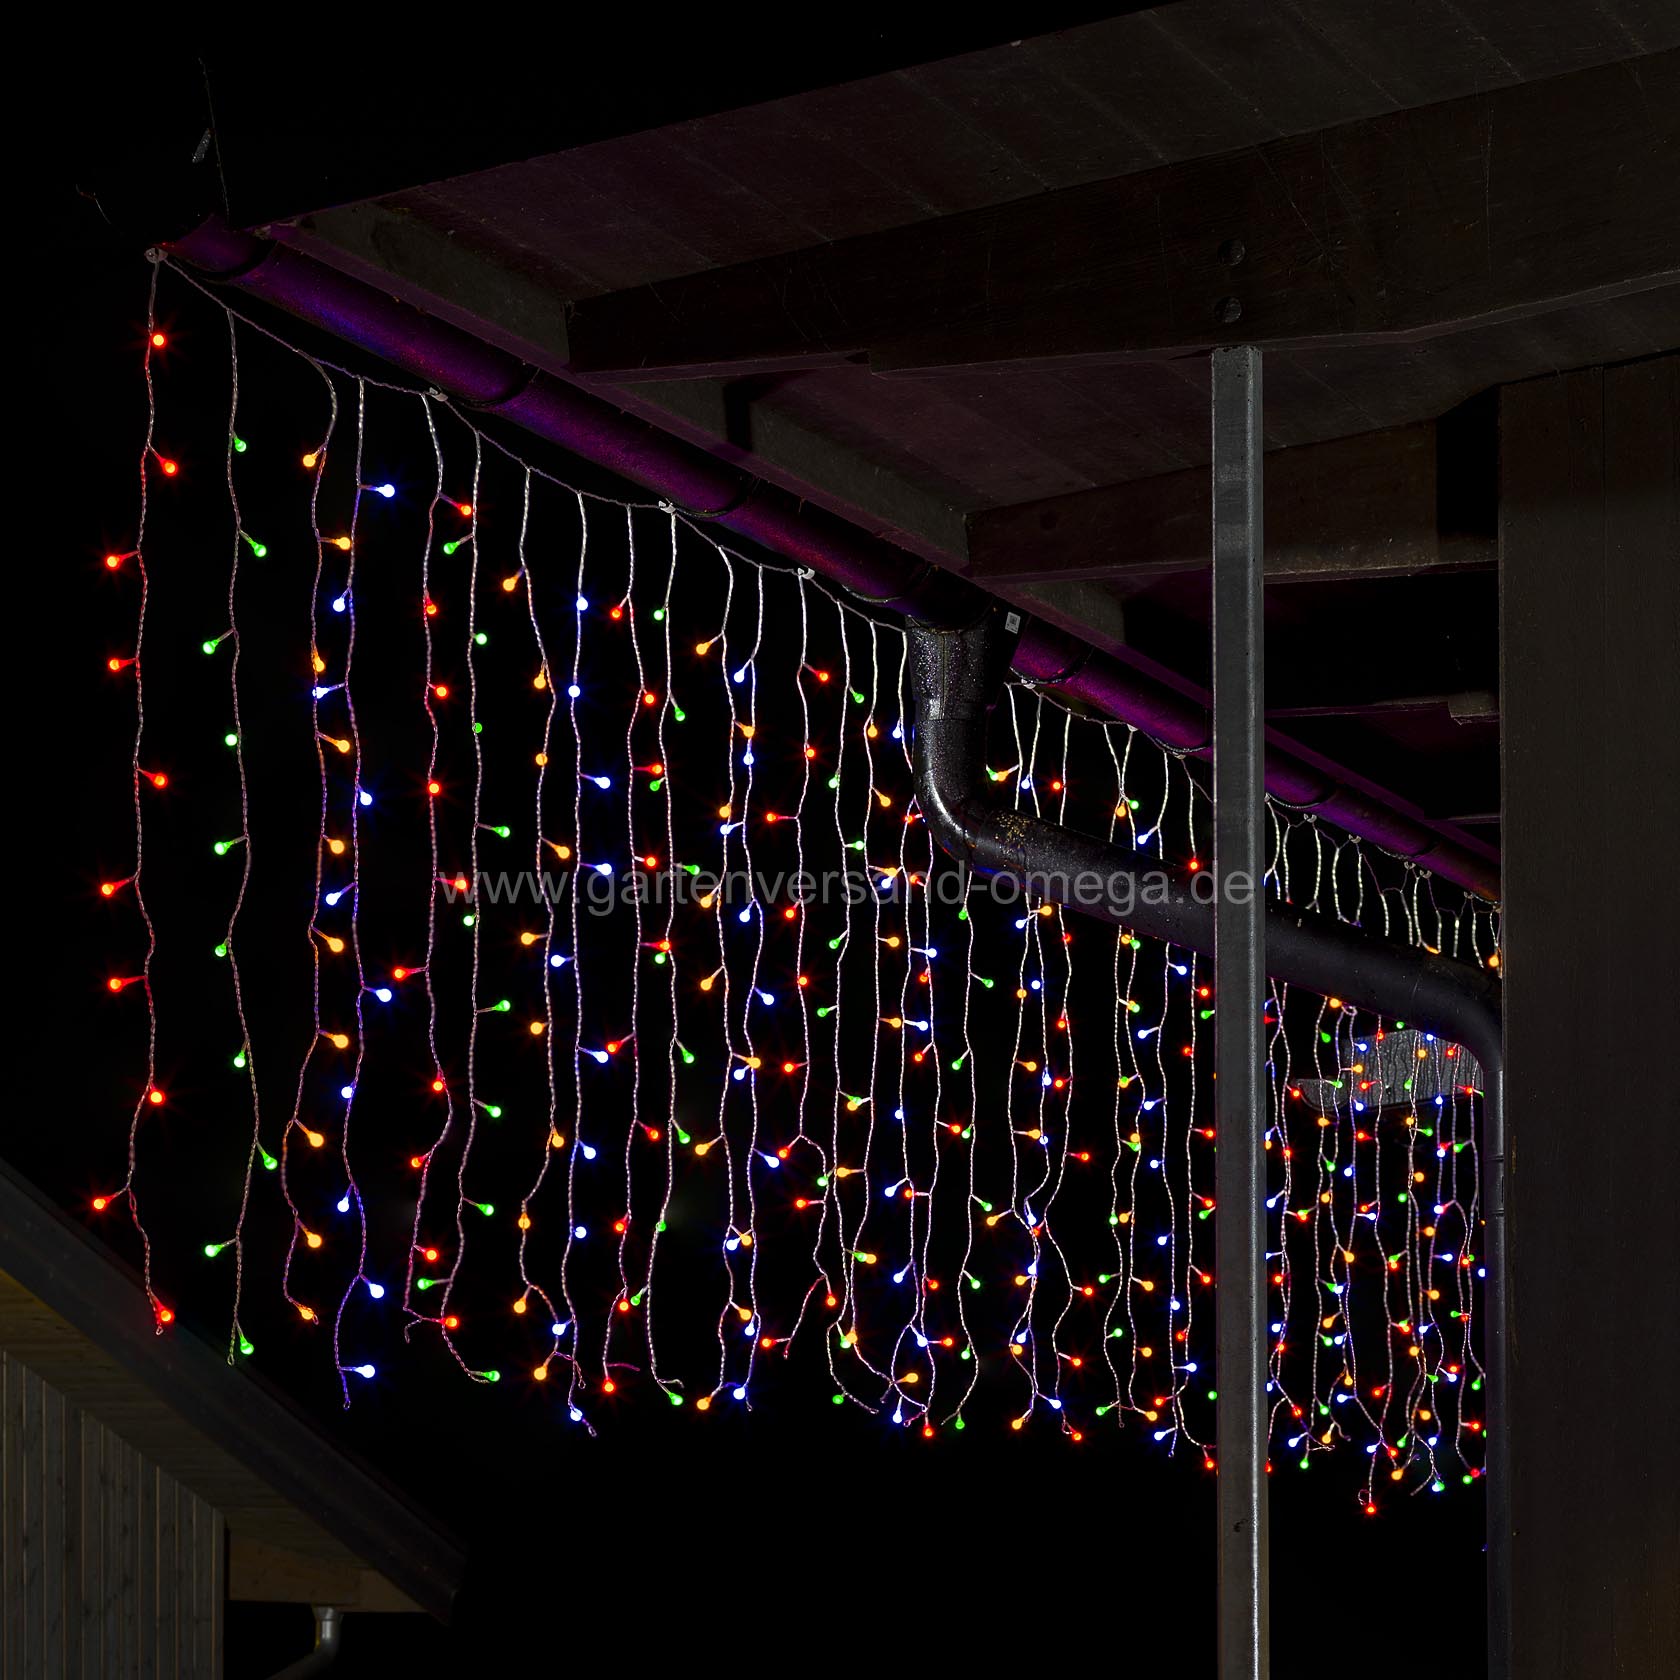 Bunter LED Lichtervorhang mit 200 Globe-LEDs - Eislichter-Vorhang,  Beleuchteter Vorhang, LED-Vorhang, Fensterdekoration, Weihnachtsbeleuchtung  Farbig, LED Eislichtvorhang, Weihnachtsaussenbeleuchtung,  Weihnachtsdekoration an der Wand | Gartenversand Omega